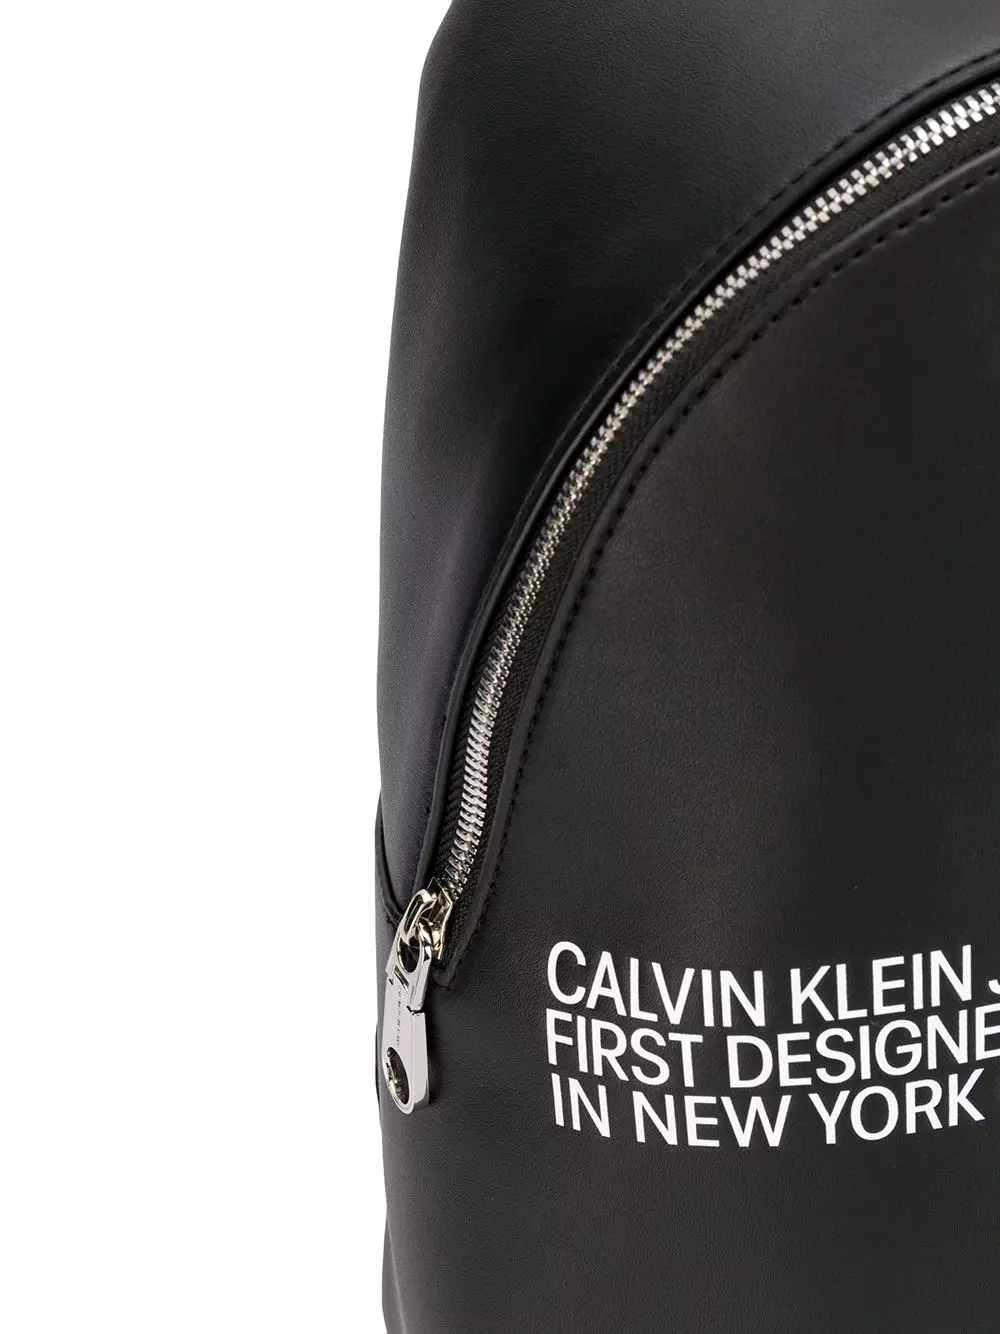 Calvin Klein Backpacks: Female reş û mêr û mêr, çermê sor, spî, zer bi monogram û rengên rengîn ên din - Backpacks 15401_19